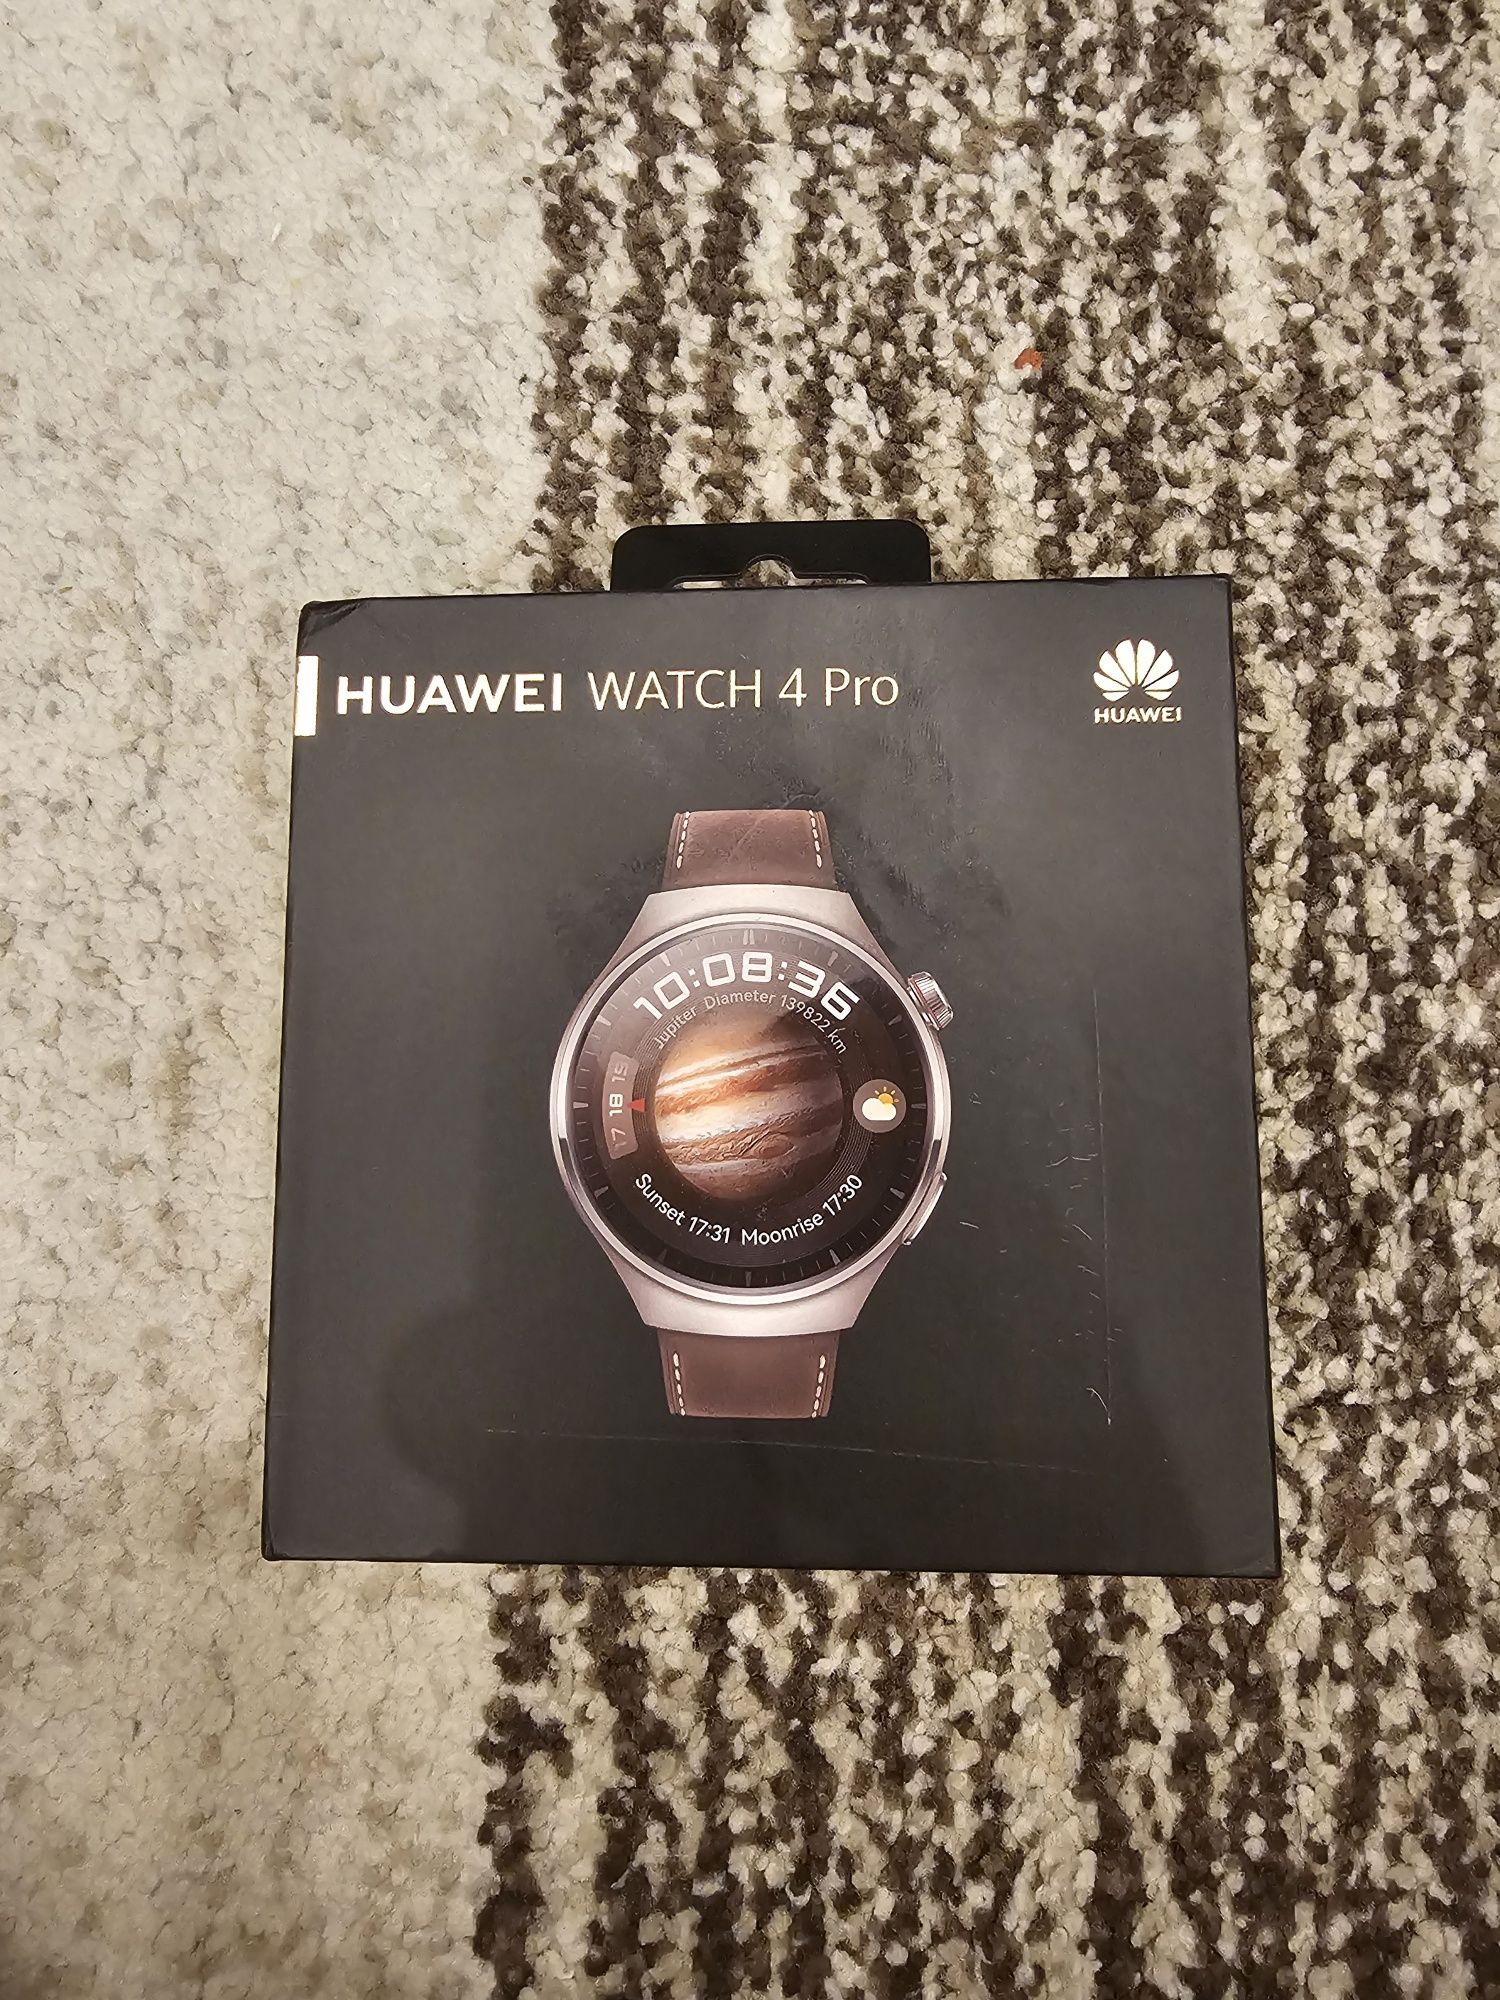 Vand Huawei watch 4pro